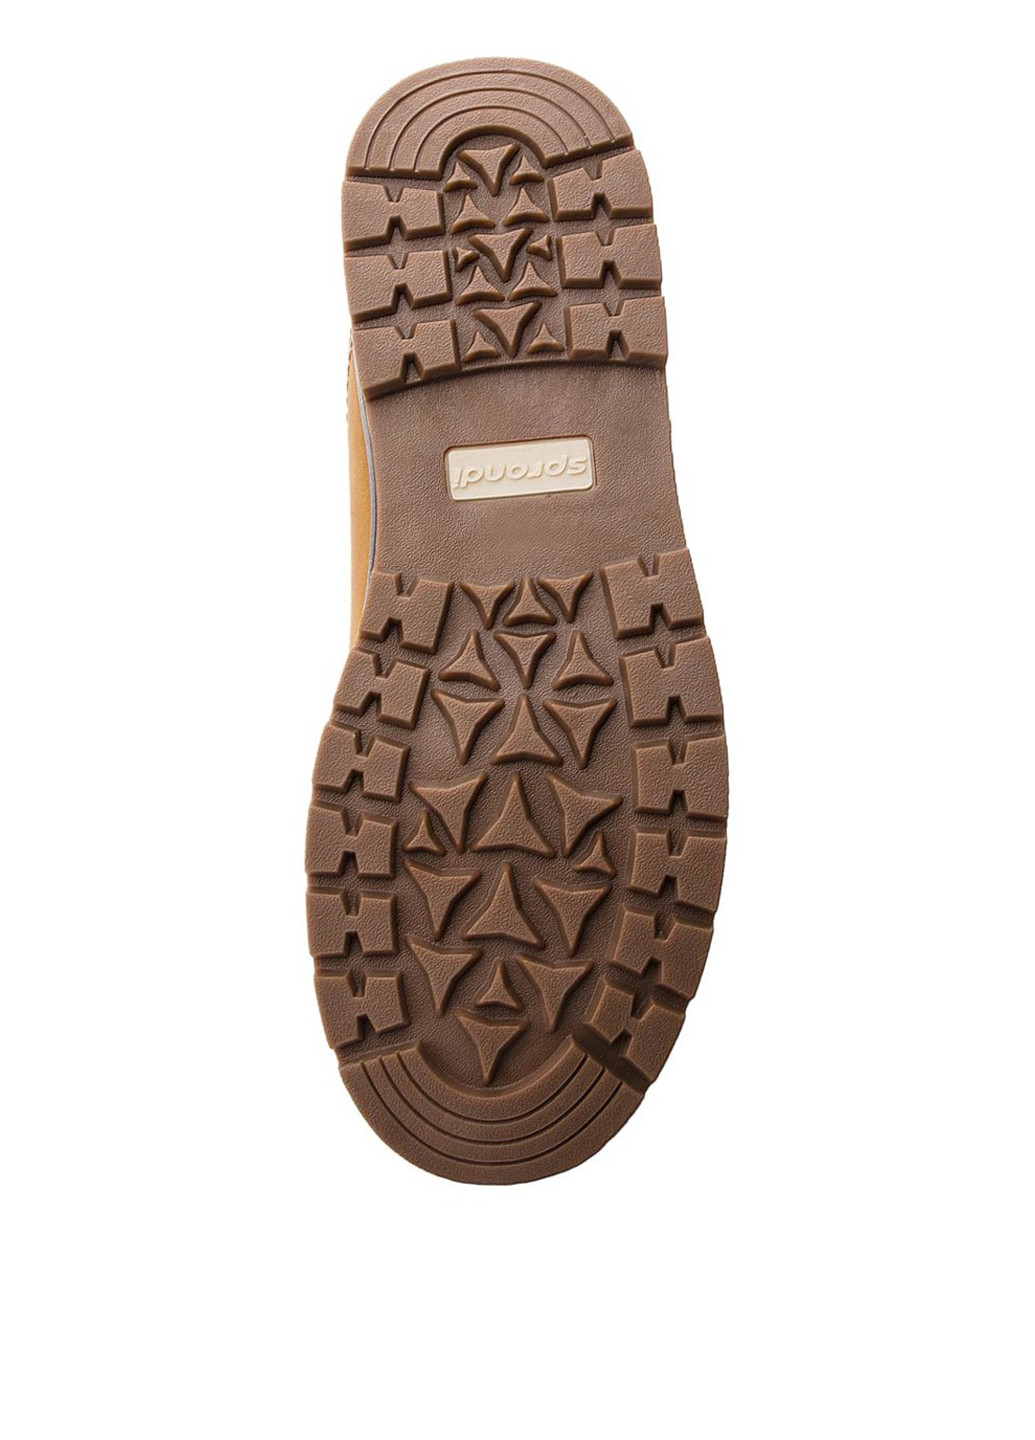 Светло-коричневые зимние черевики mp07-17026-04 SPRANDI EARTH GEAR